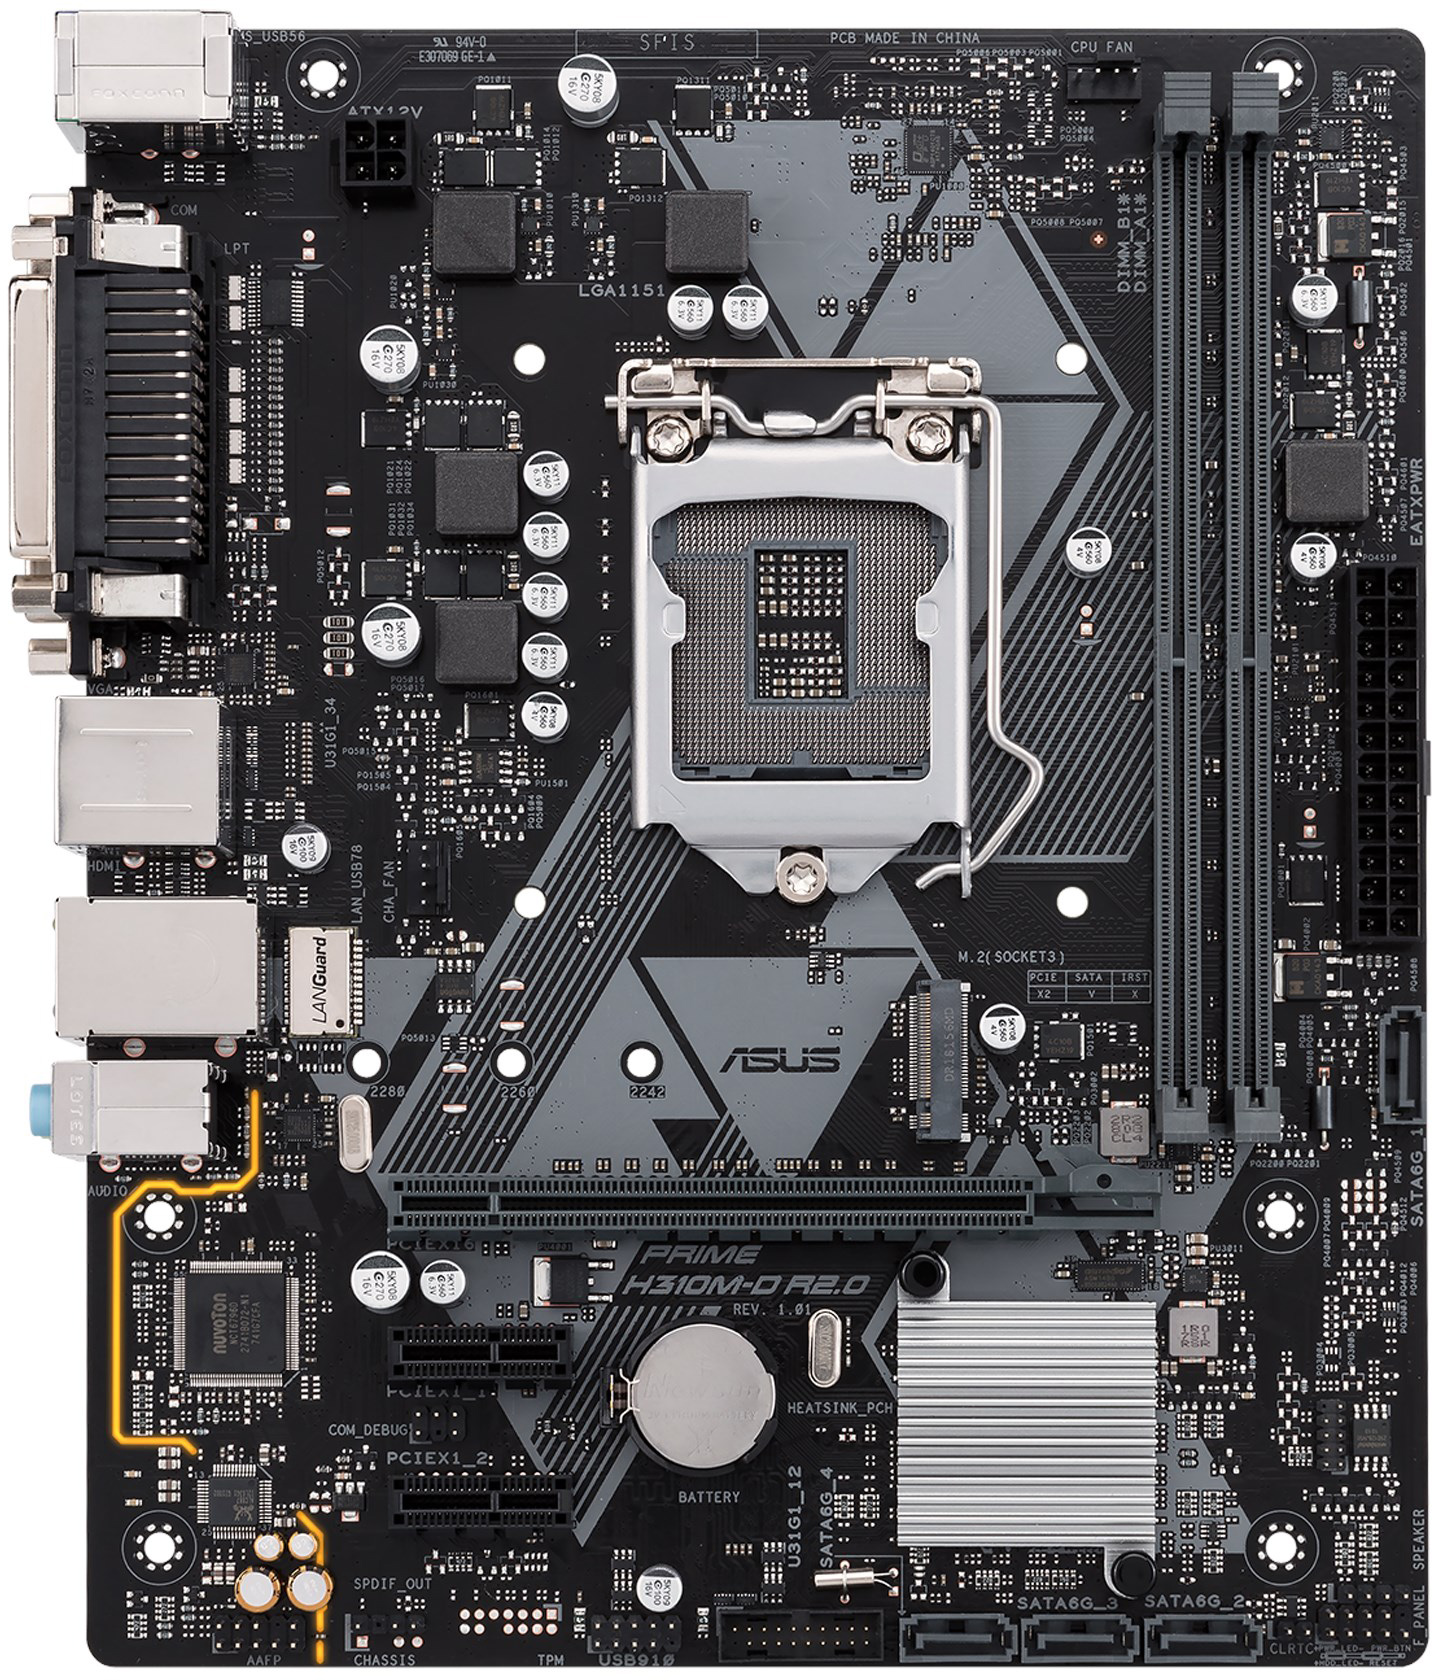 Asus Prime H310M-D R2.0 GPU